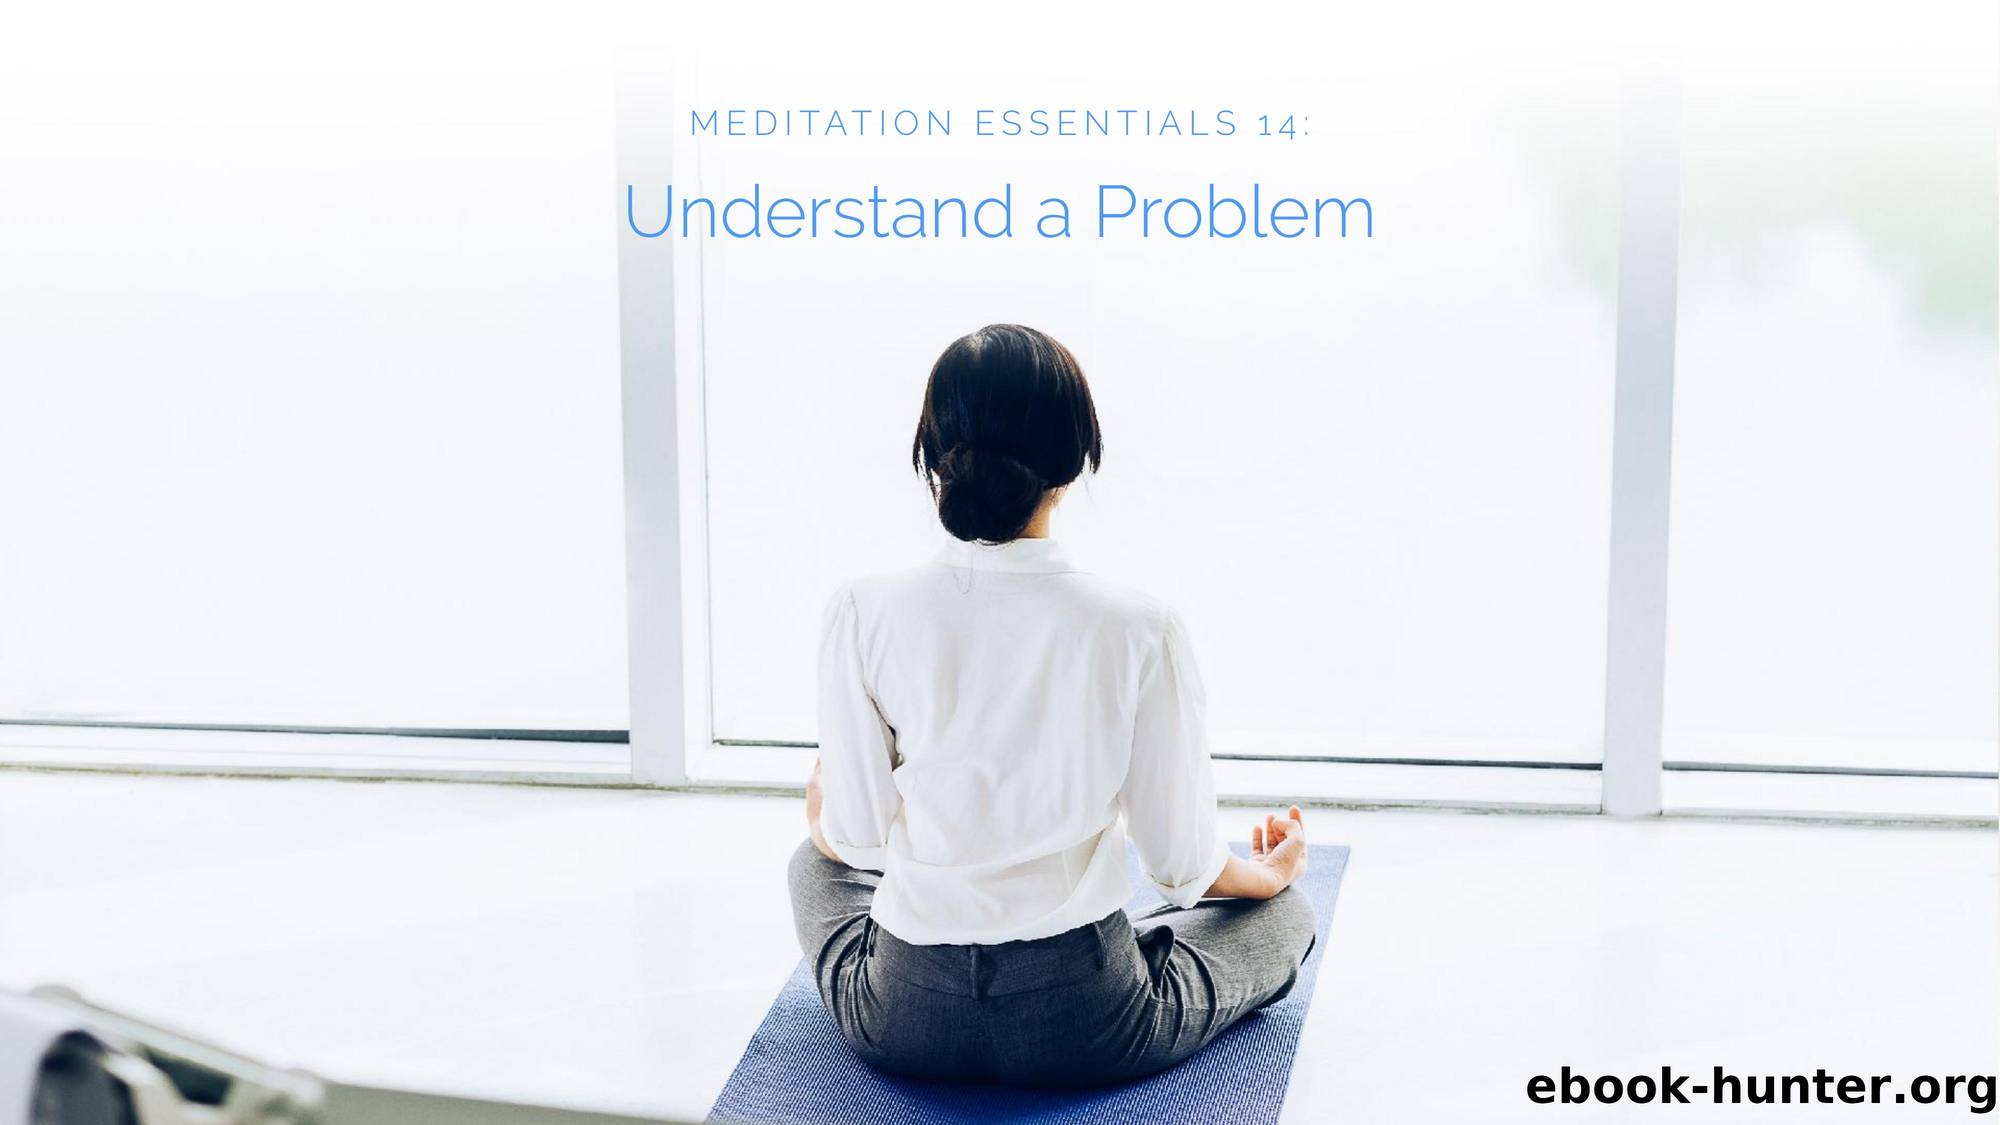 Meditation Essentials 14 Understand a Problem by Unknown